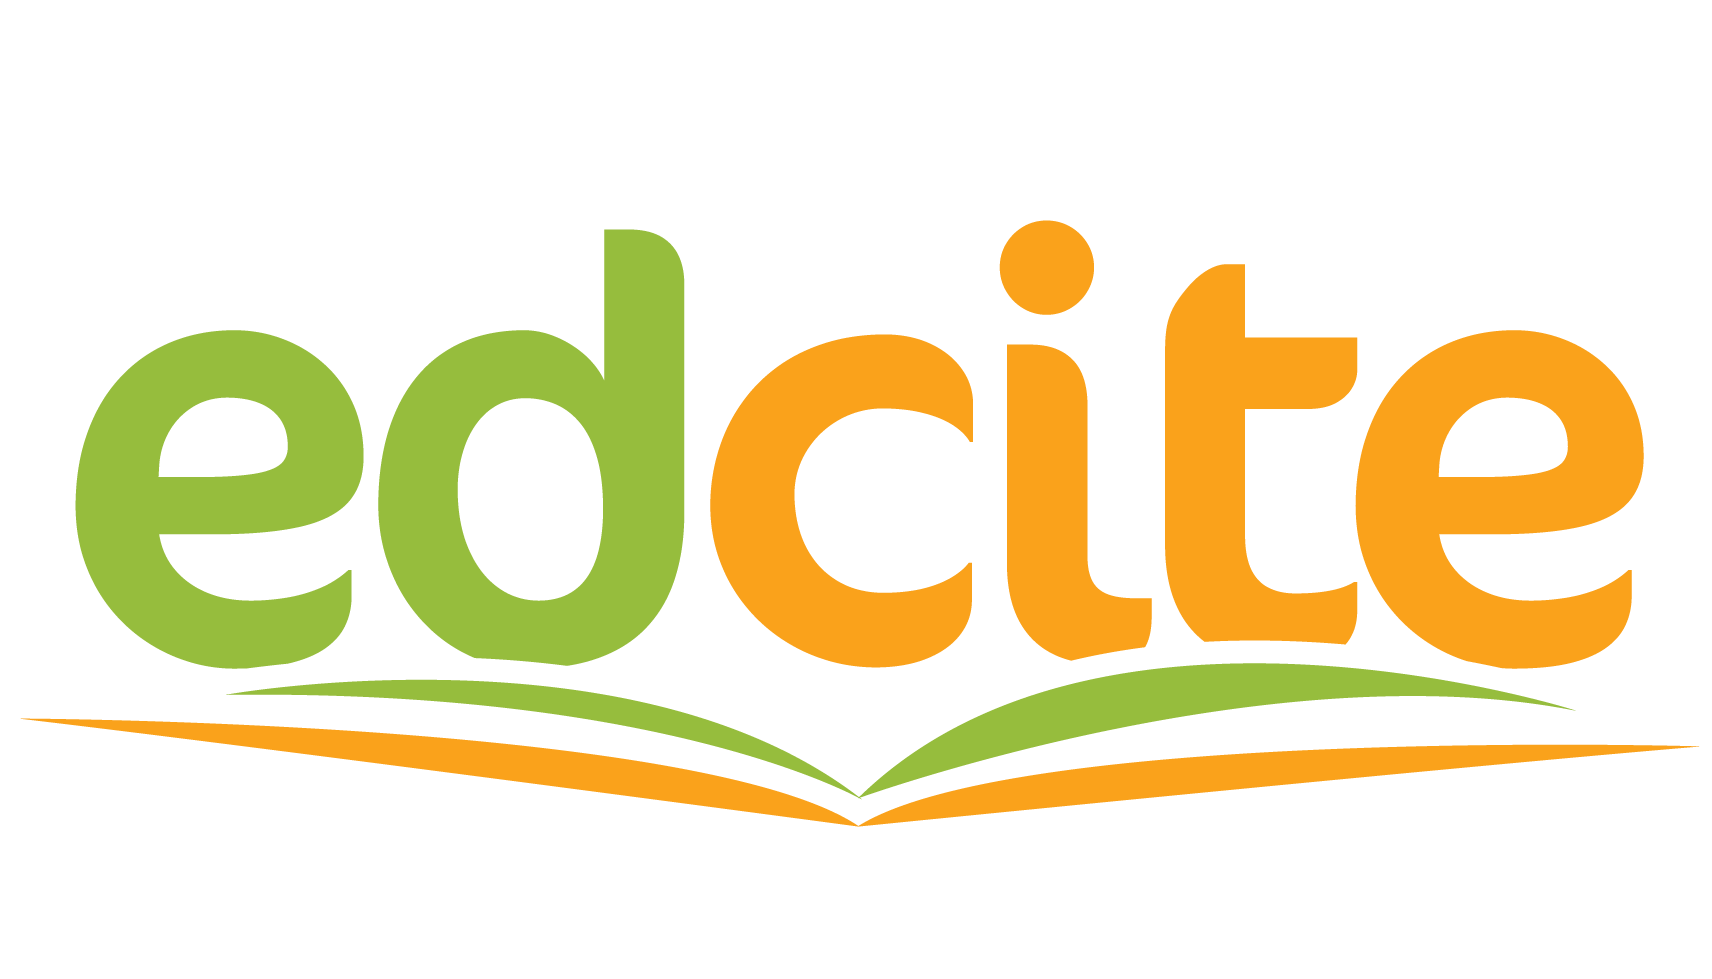 Edcite's Logo